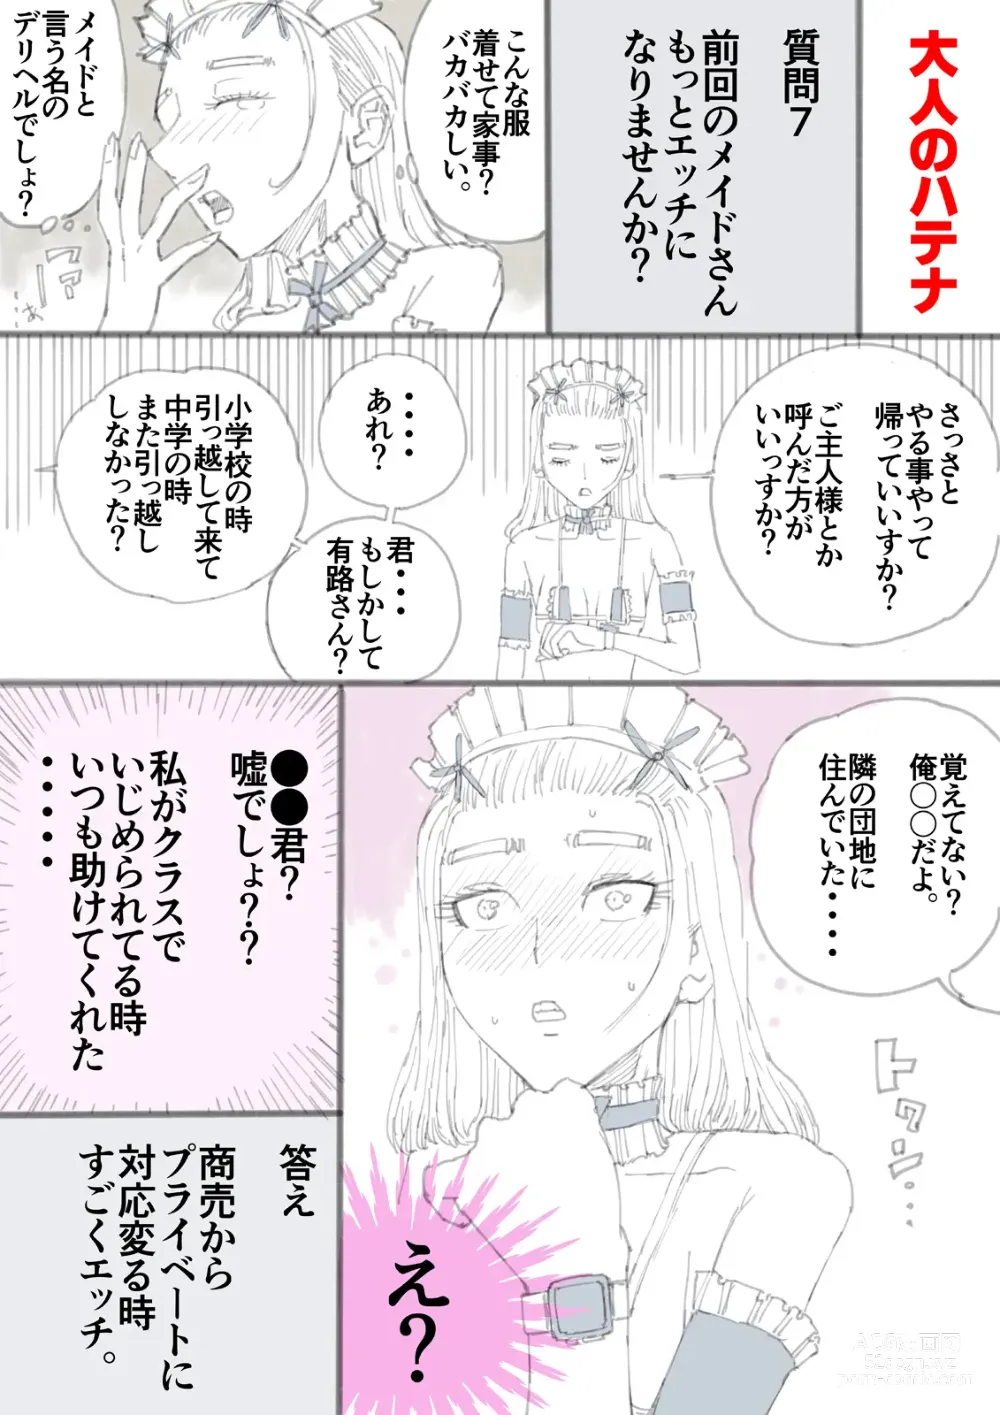 Page 58 of doujinshi Otona no Hatena